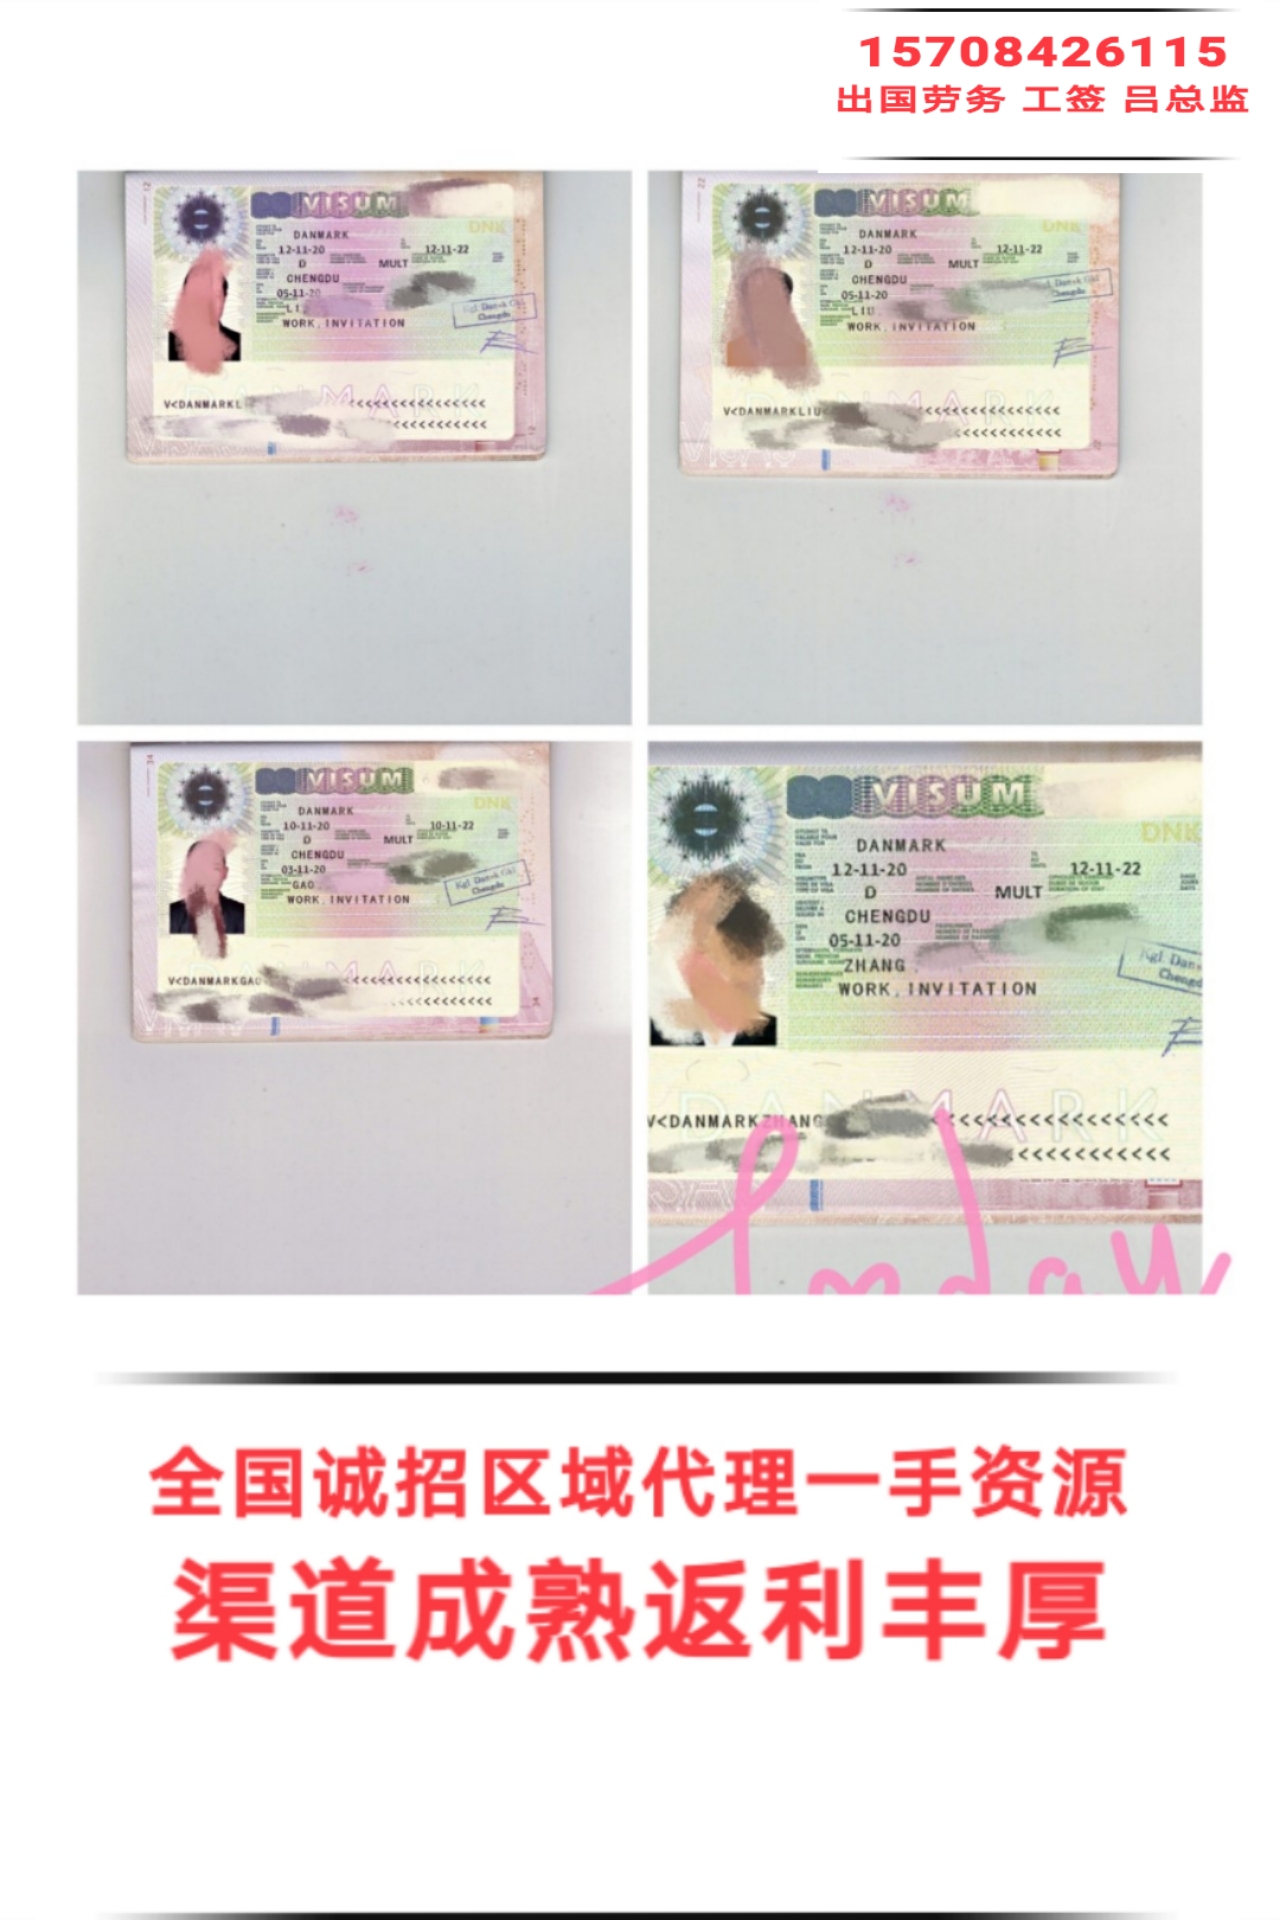 黑龍江大慶出國勞務急需檢驗員理貨員保簽項目正規可靠